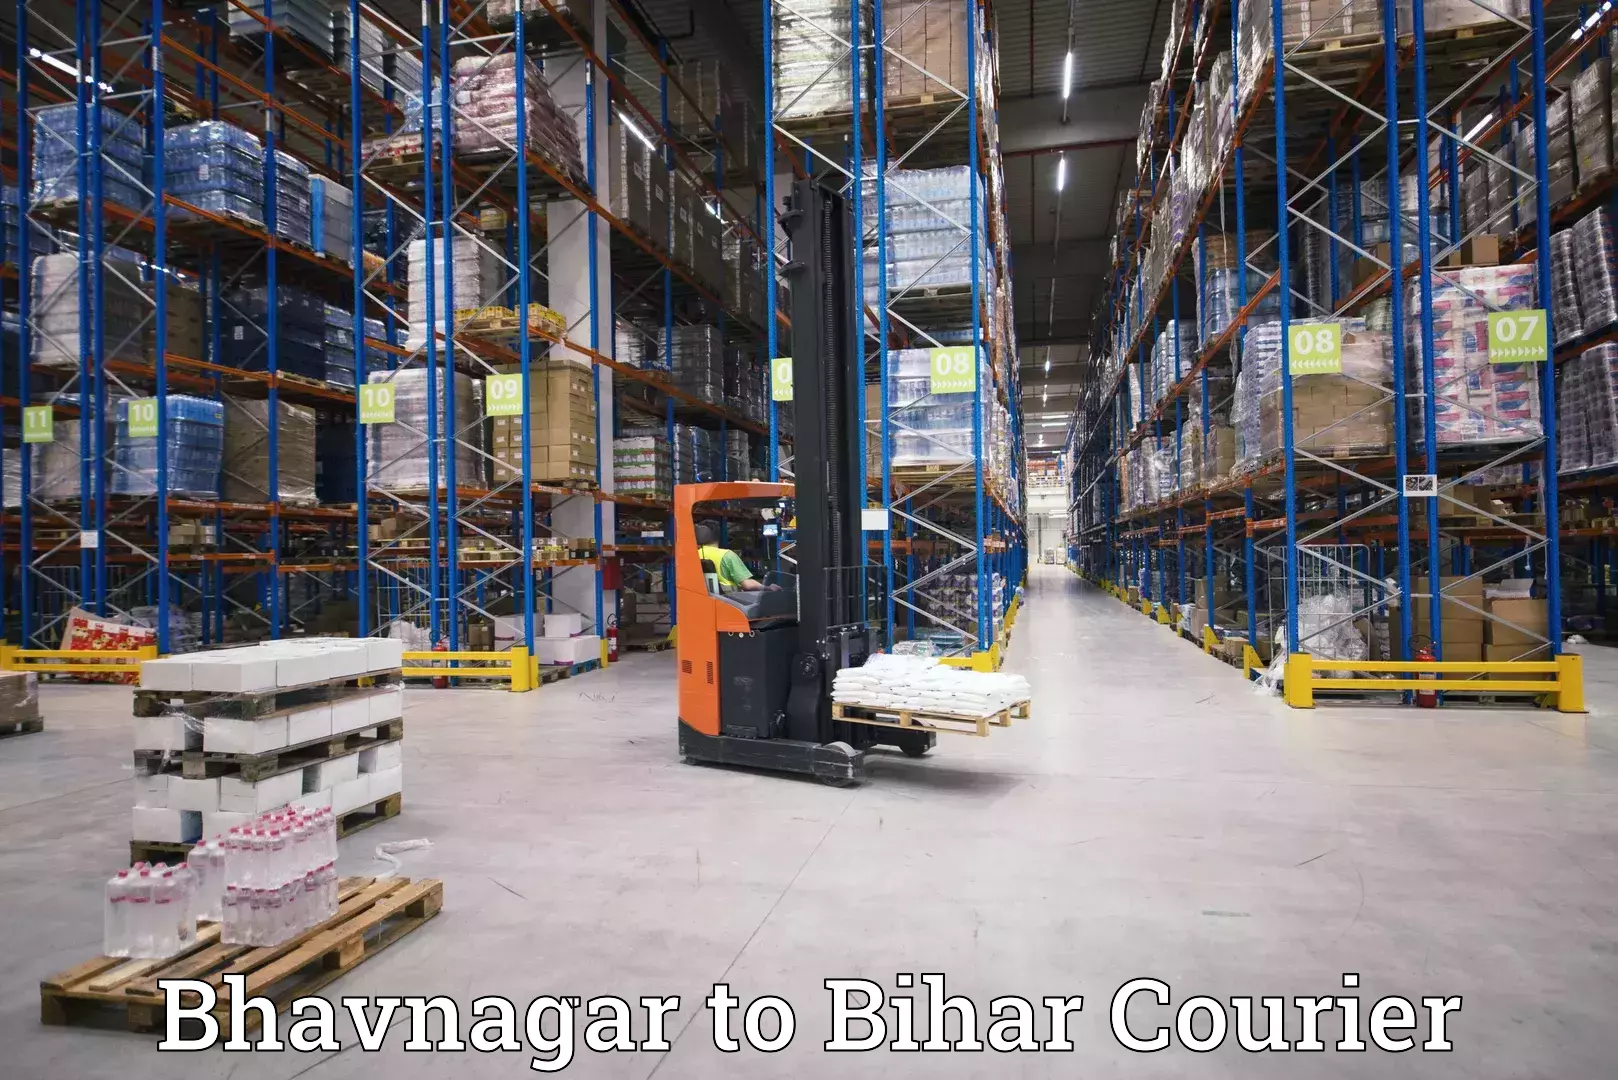 Next-generation courier services in Bhavnagar to Sandesh